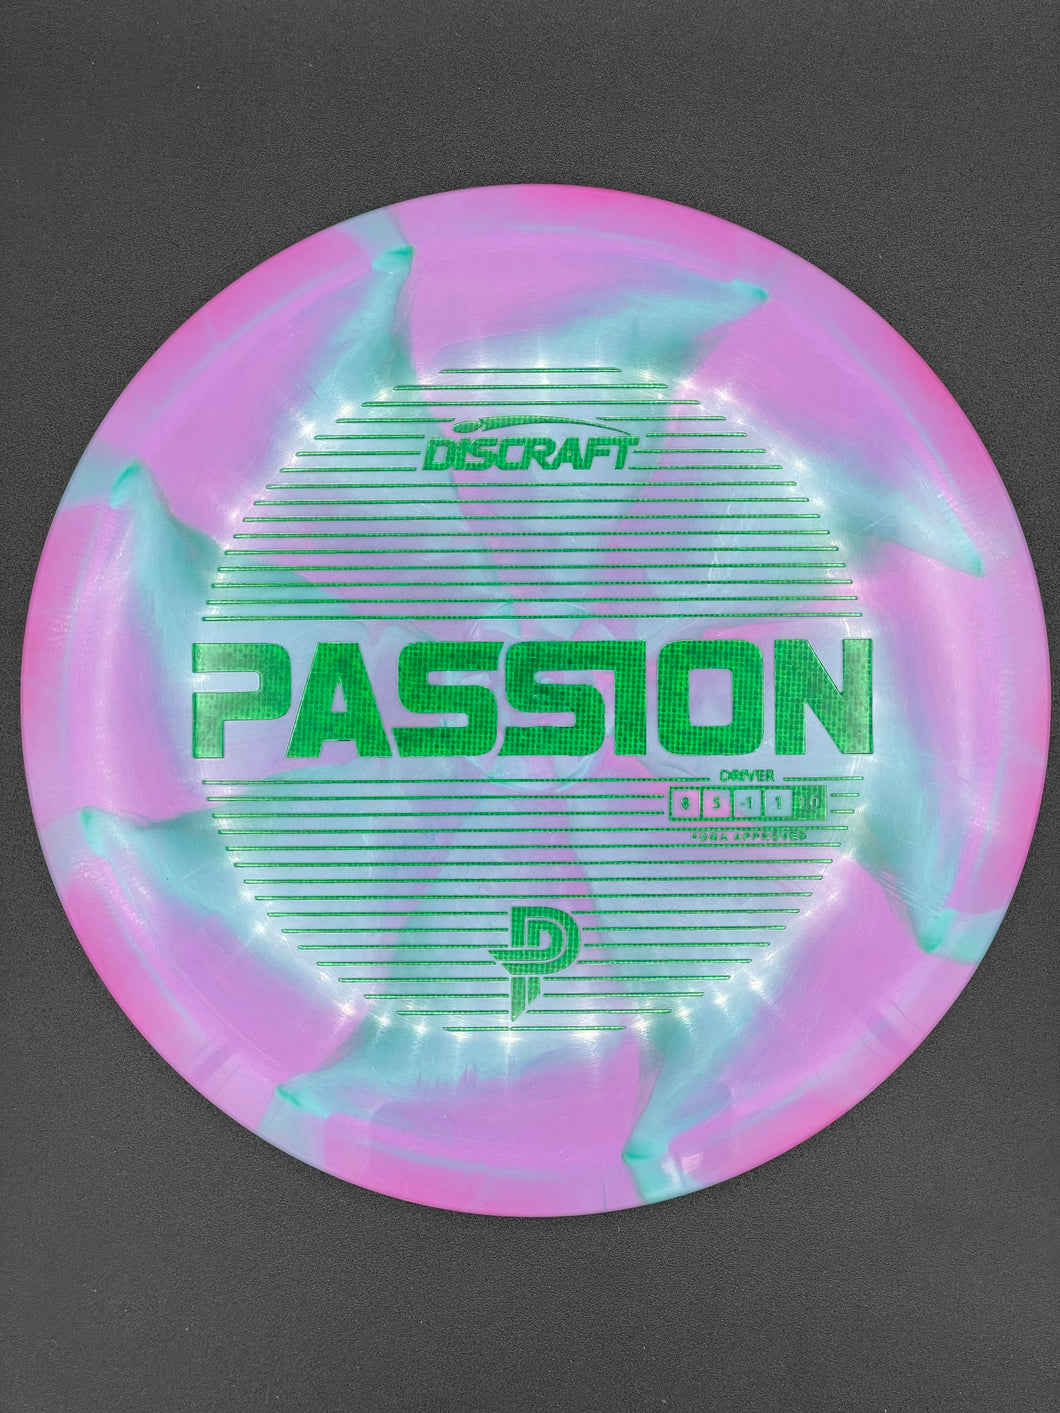 Passion / Discraft / ESP / Paige Pierce Line